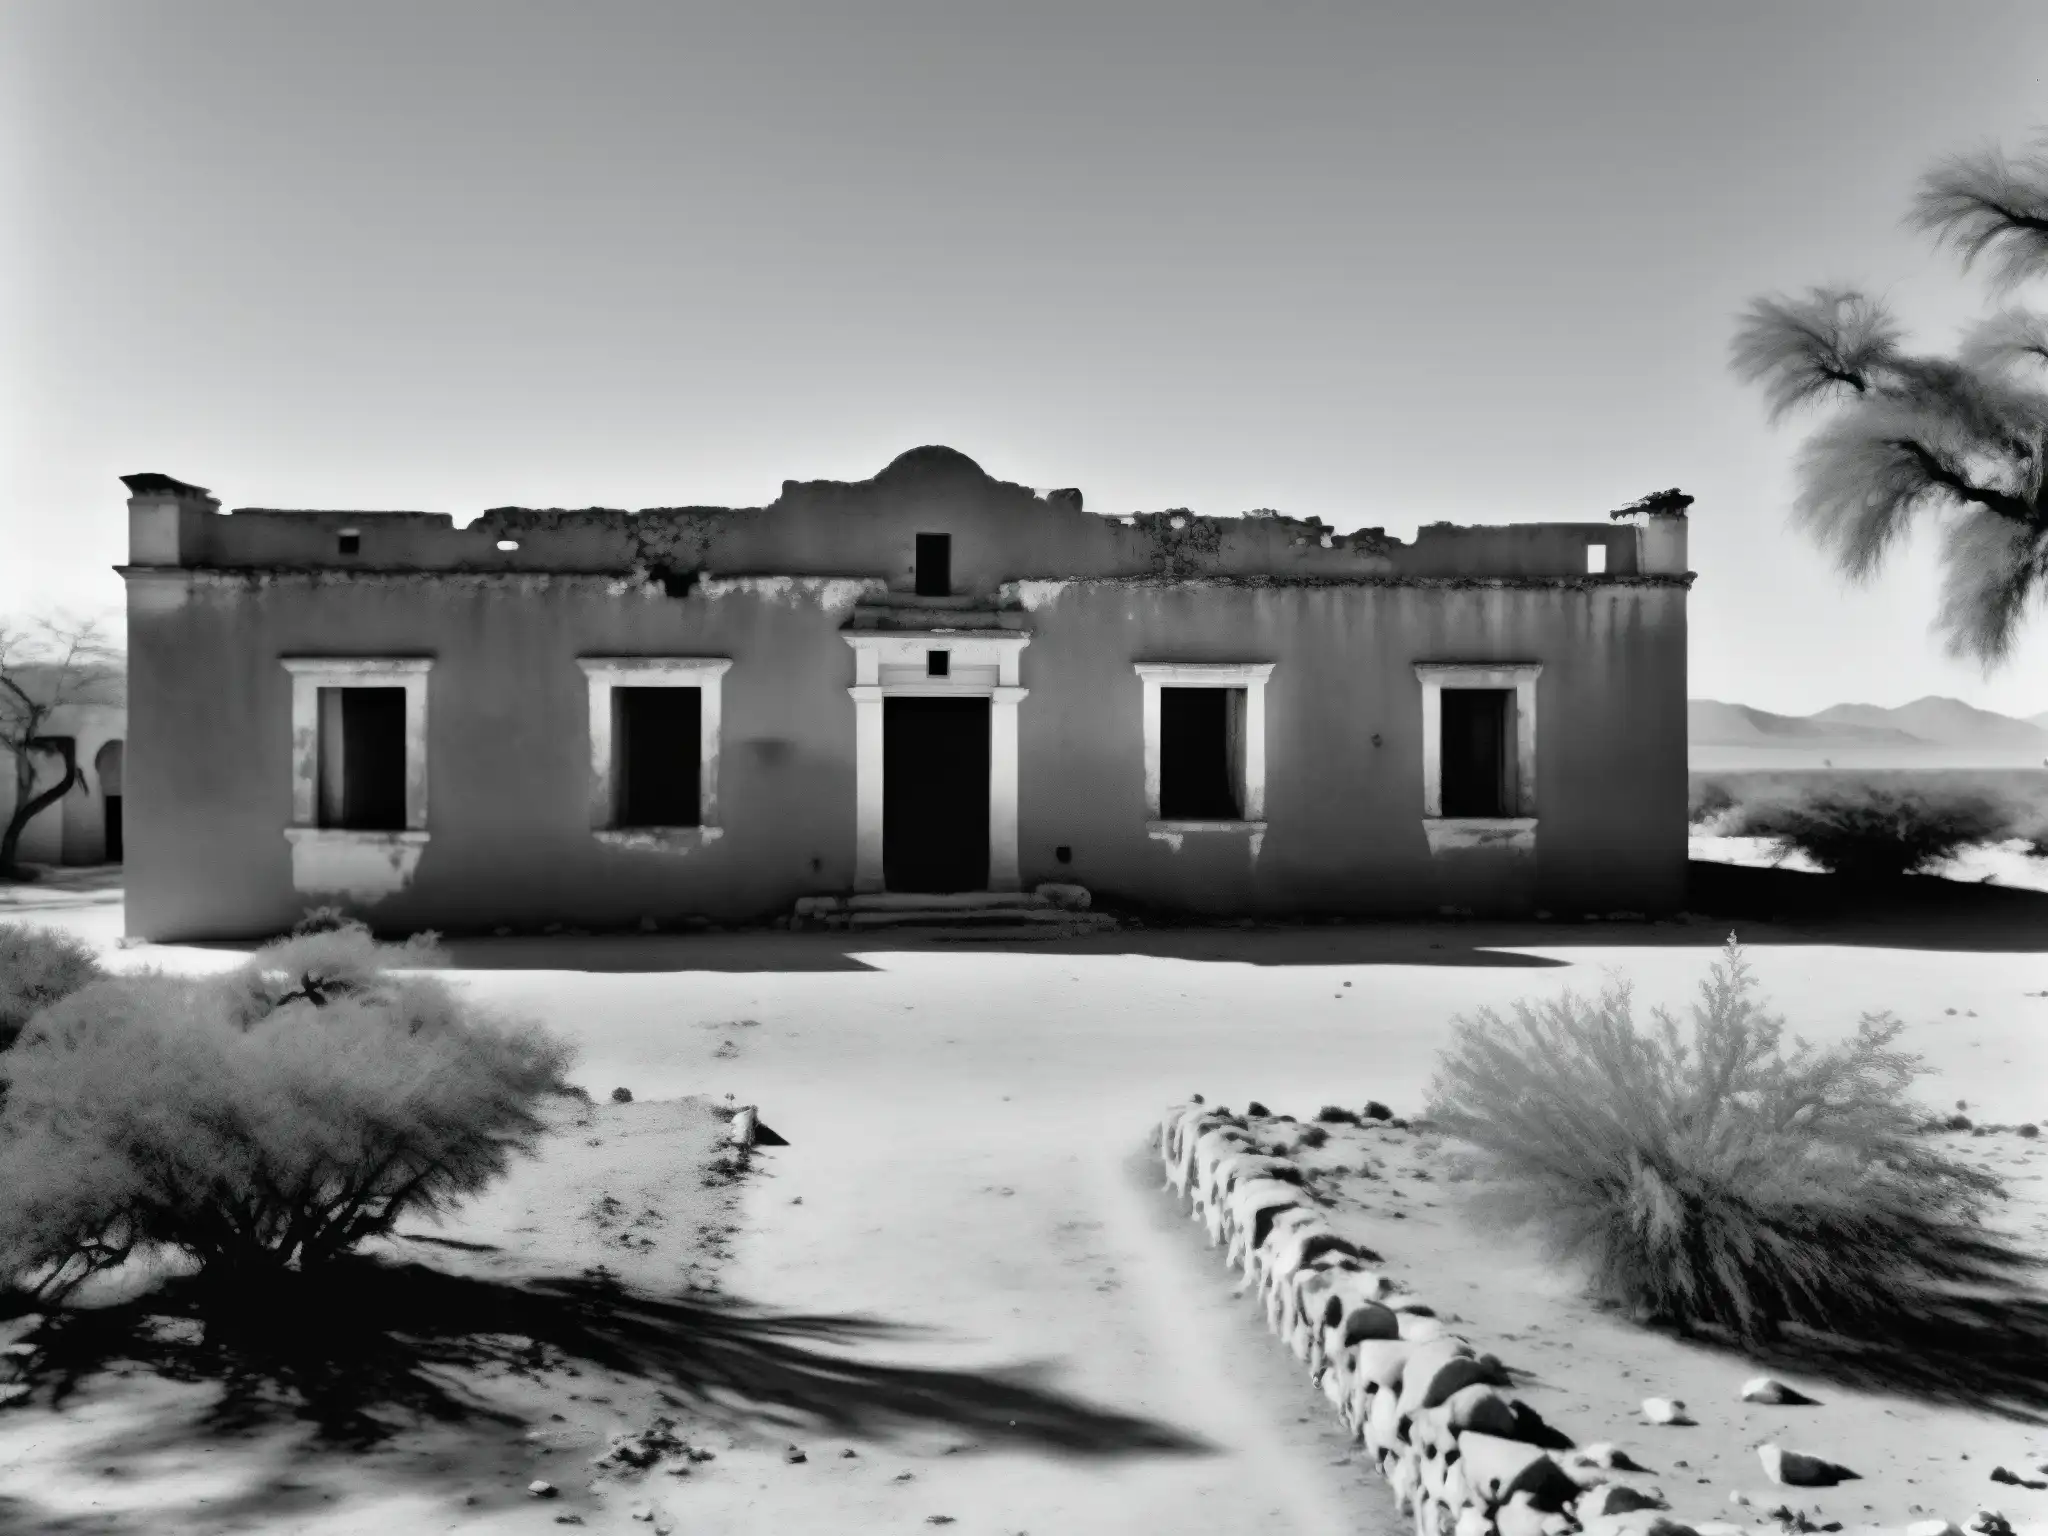 Imagen en blanco y negro de la hacienda abandonada de Pancho Villa, mostrando la atmósfera desolada y la fortuna perdida del líder revolucionario